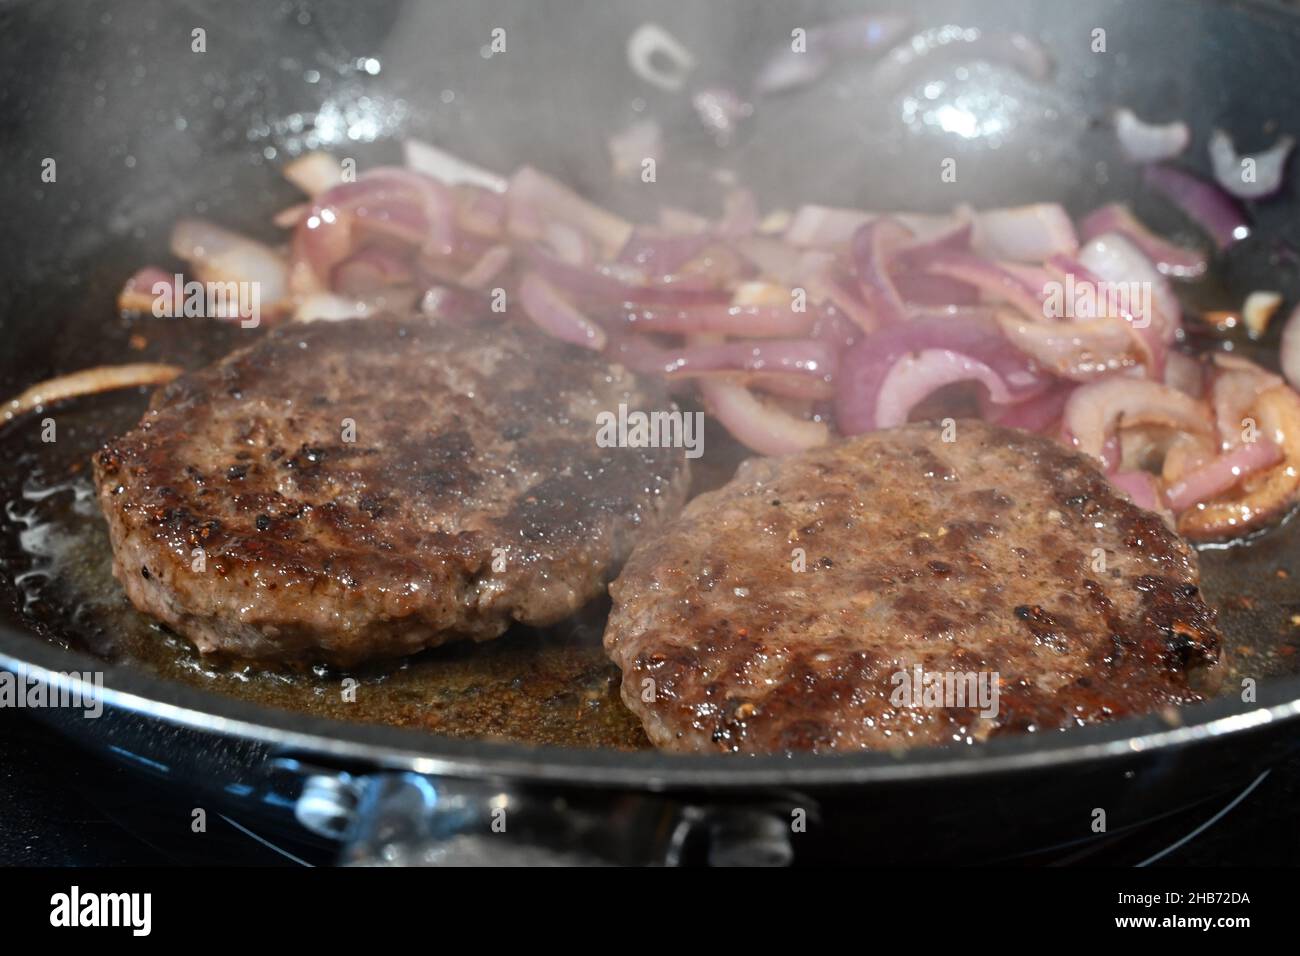 Burger Kochen in der Pfanne aus nächster Nähe Stockfotografie - Alamy